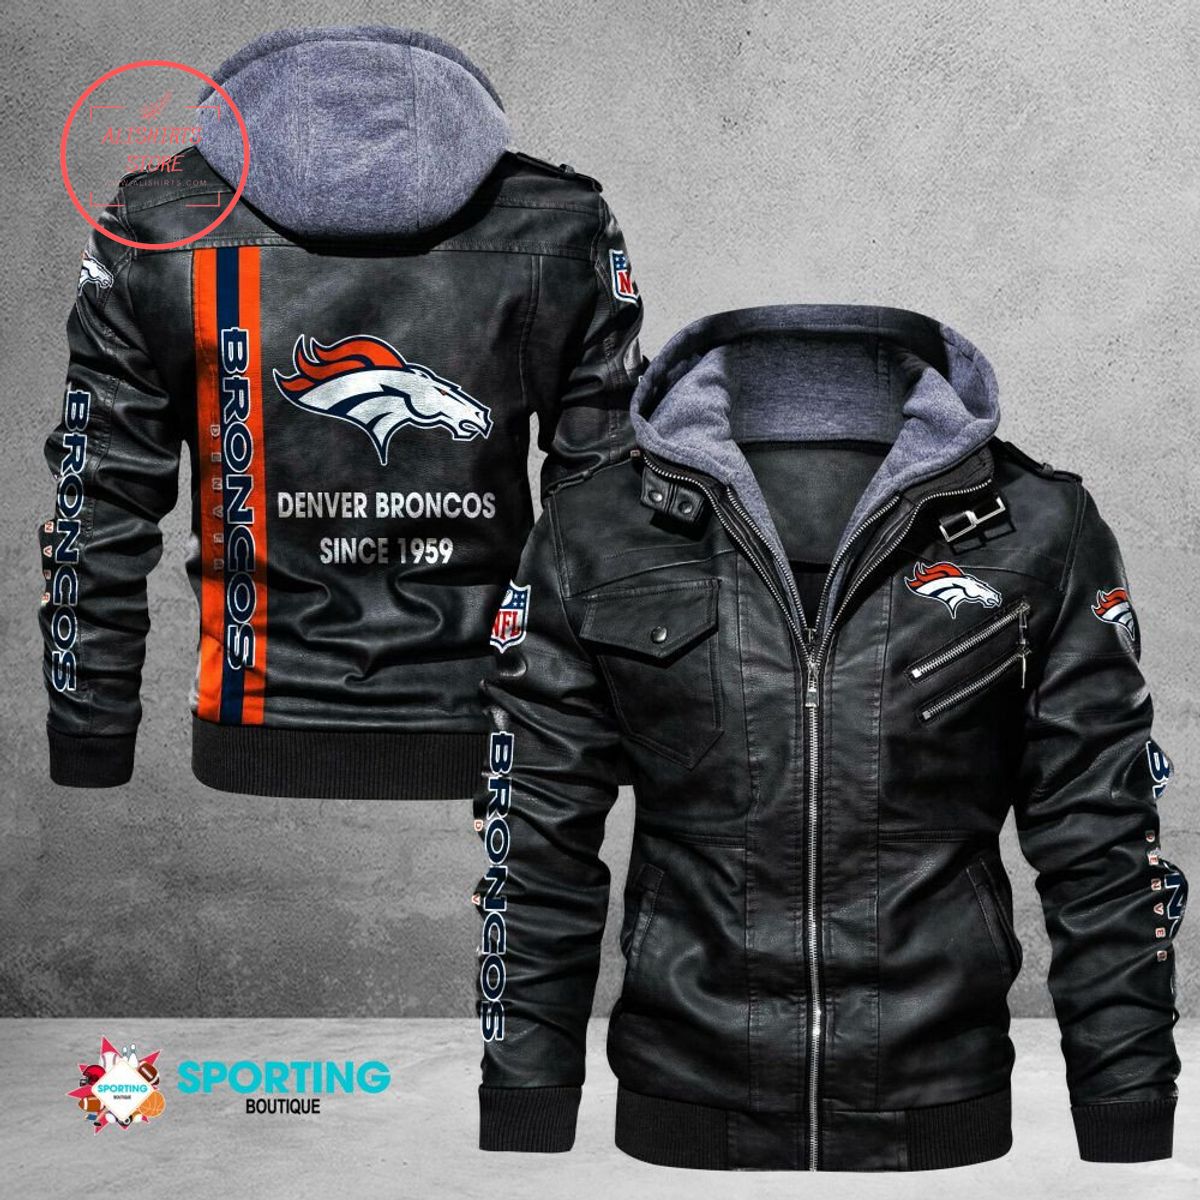 NFL Denver Broncos Logo Custom name Leather Jacket Hooded Fleece For Fan